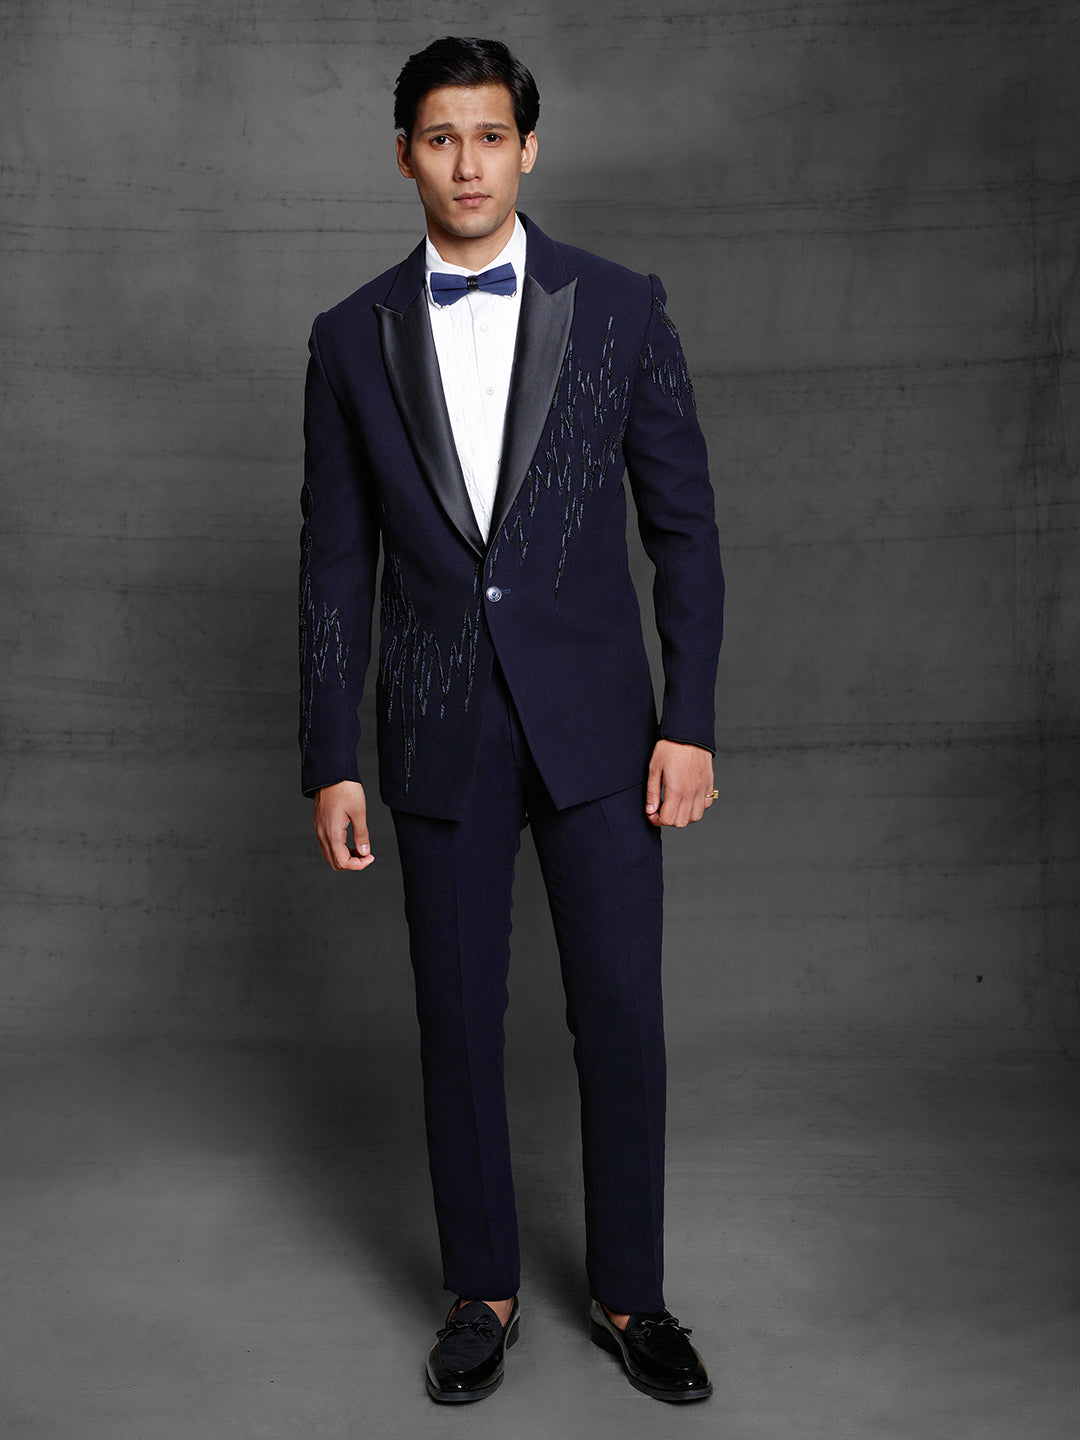 Blue ethnic suit for men